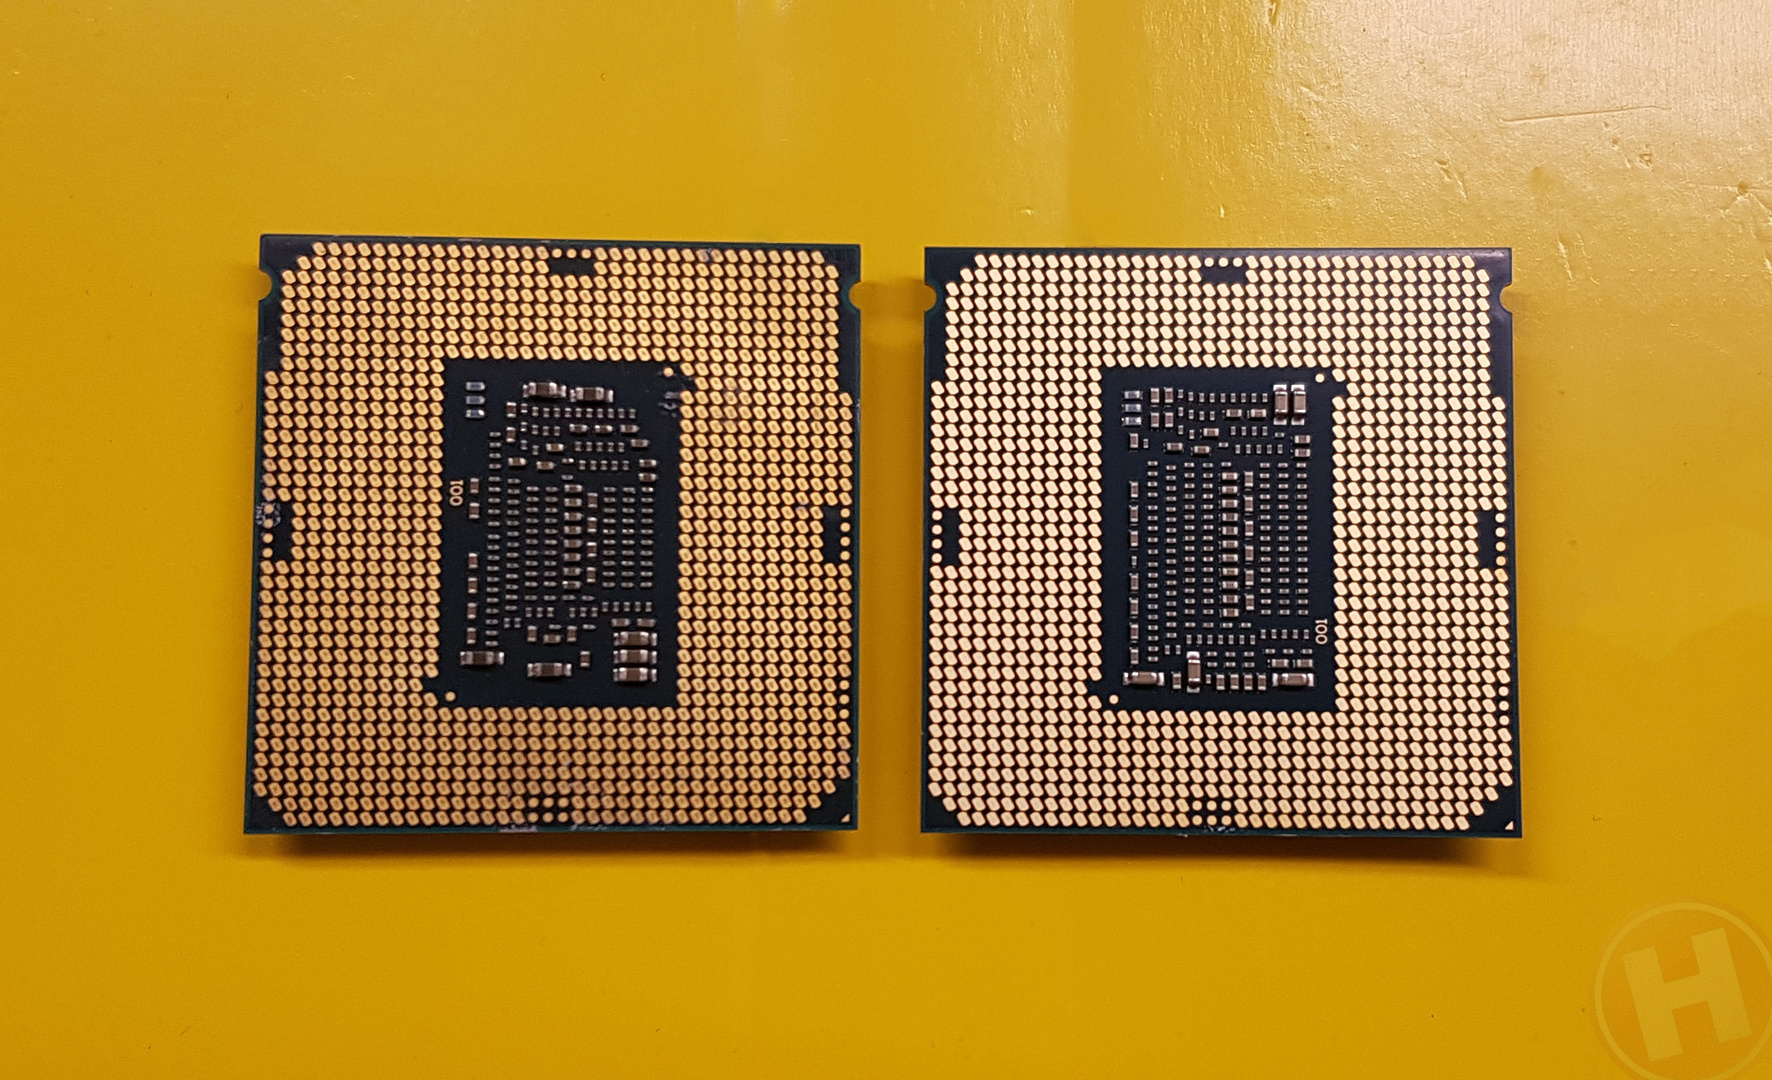 Immagine pubblicata in relazione al seguente contenuto: Le CPU LGA-1151 Coffee Lake di Intel richiedono una nuova motherboard Z370 | Nome immagine: news27059_Intel-LGA-1151-CPUs_2.jpg